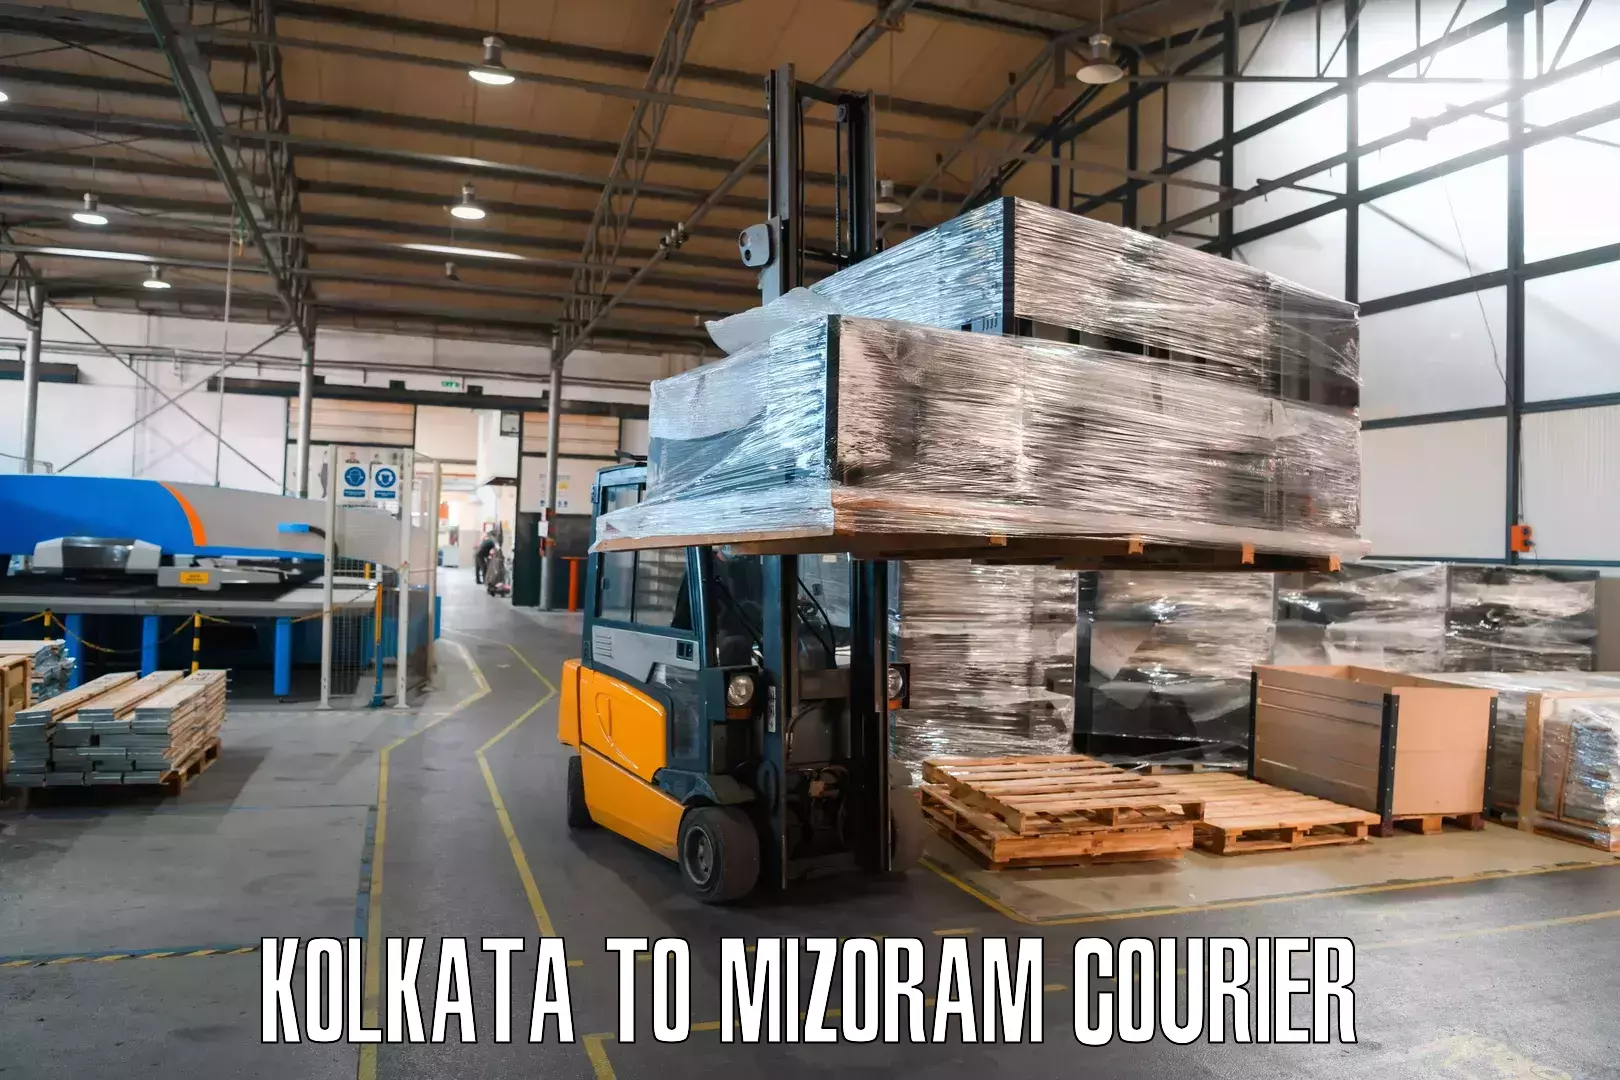 Flexible delivery schedules Kolkata to Serchhip